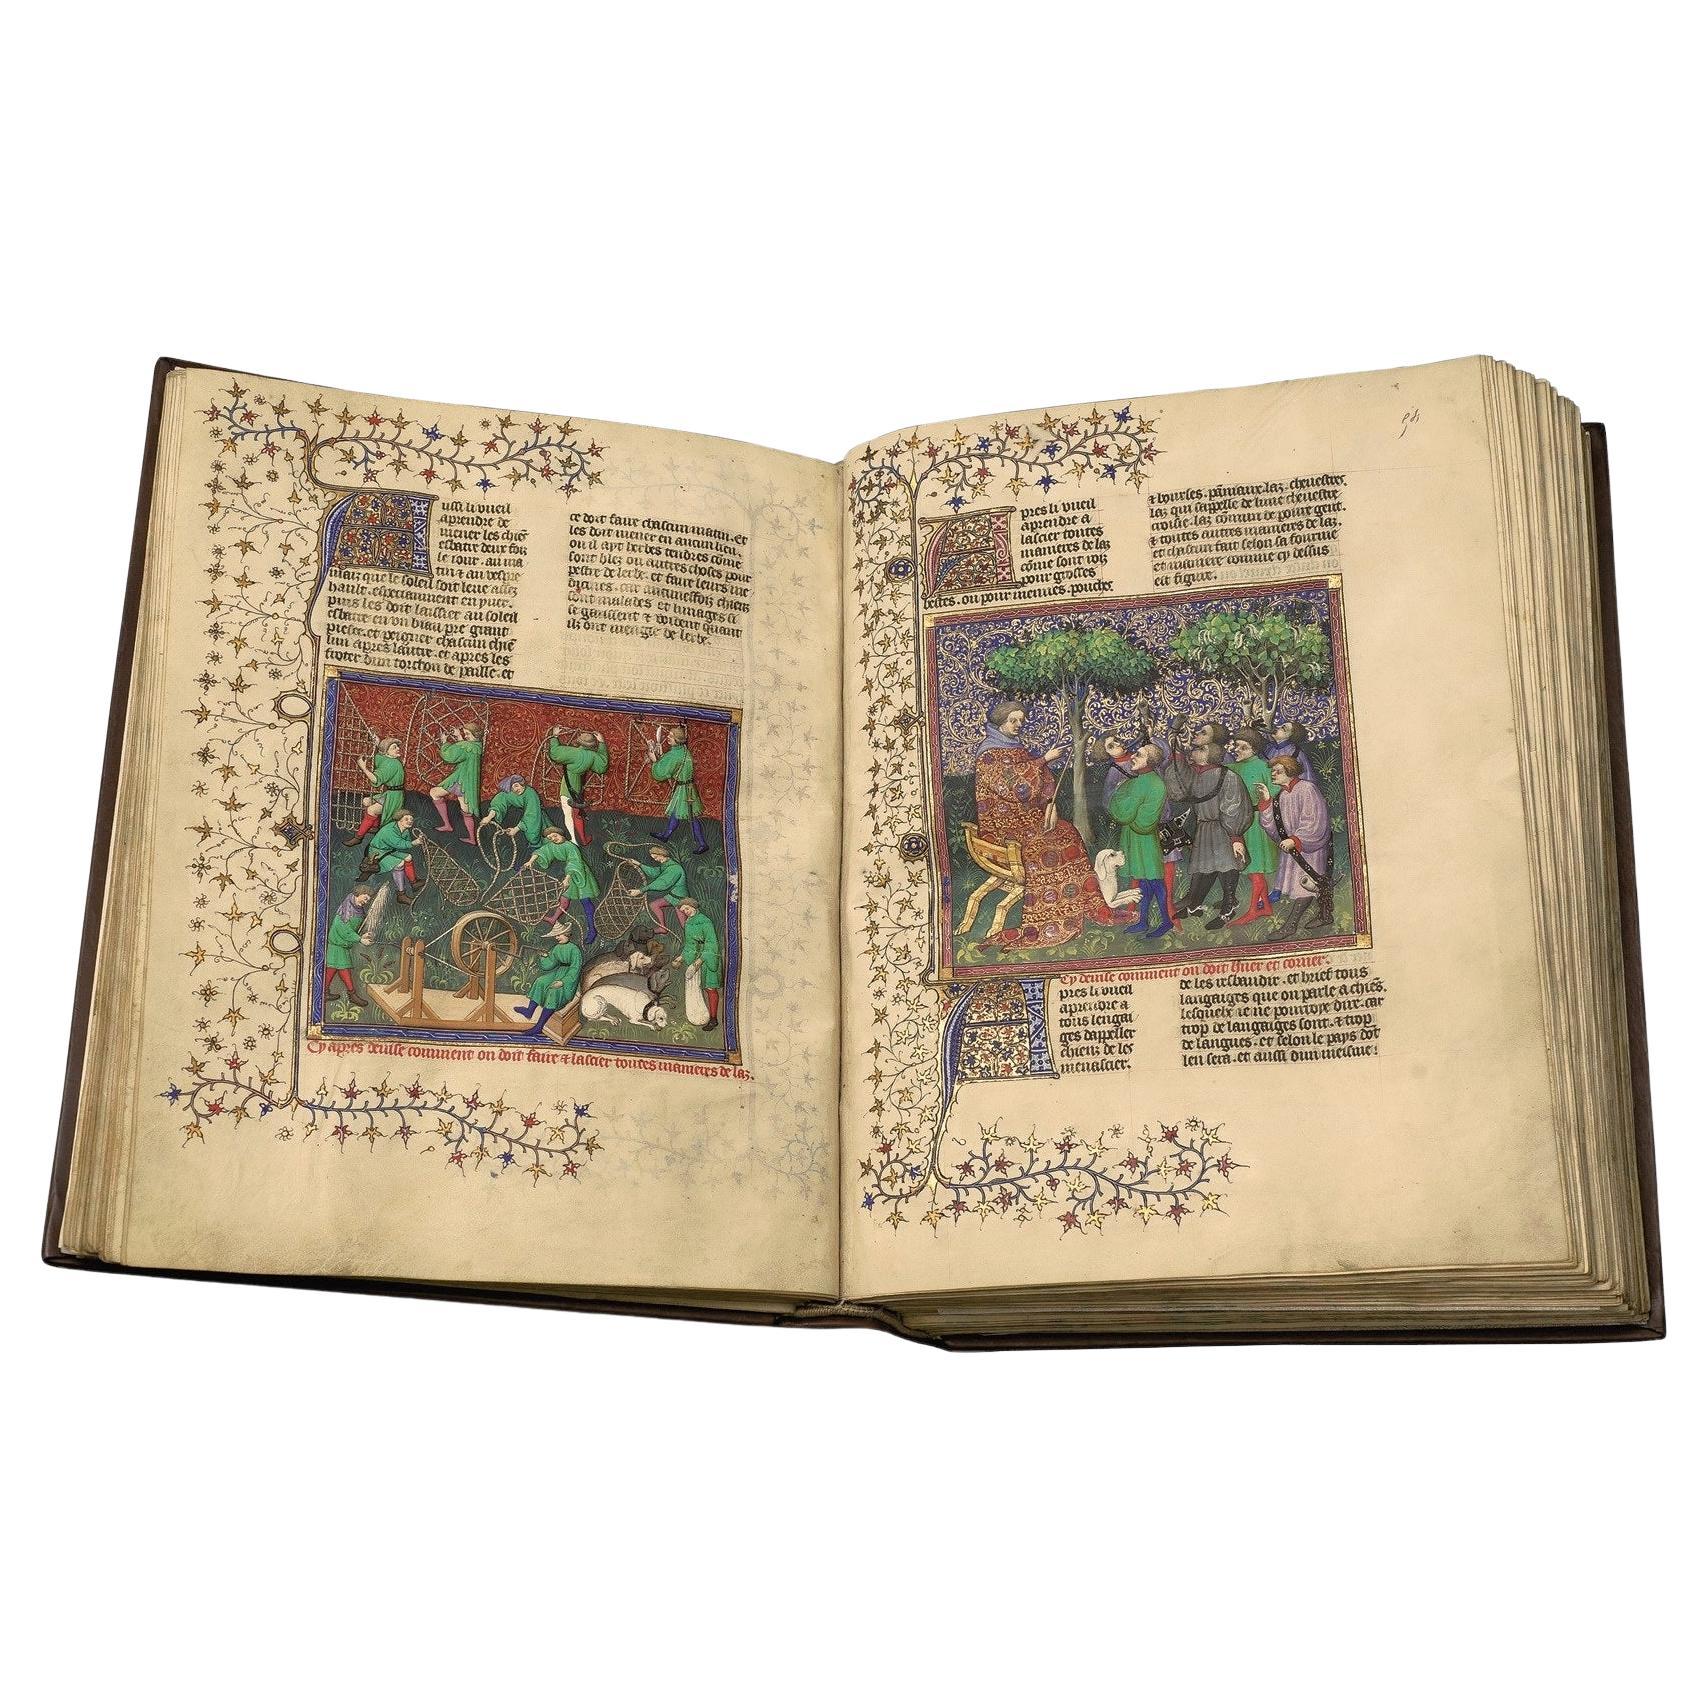 Il s'agit d'une édition fac-similé unique limitée à 987 exemplaires d'un manuscrit médiéval enluminé, le Livre de la Chasse, du noble français Gaston Fébus, appartenant à la Bibliothèque nationale de France, réalisée en combinant la plus haute